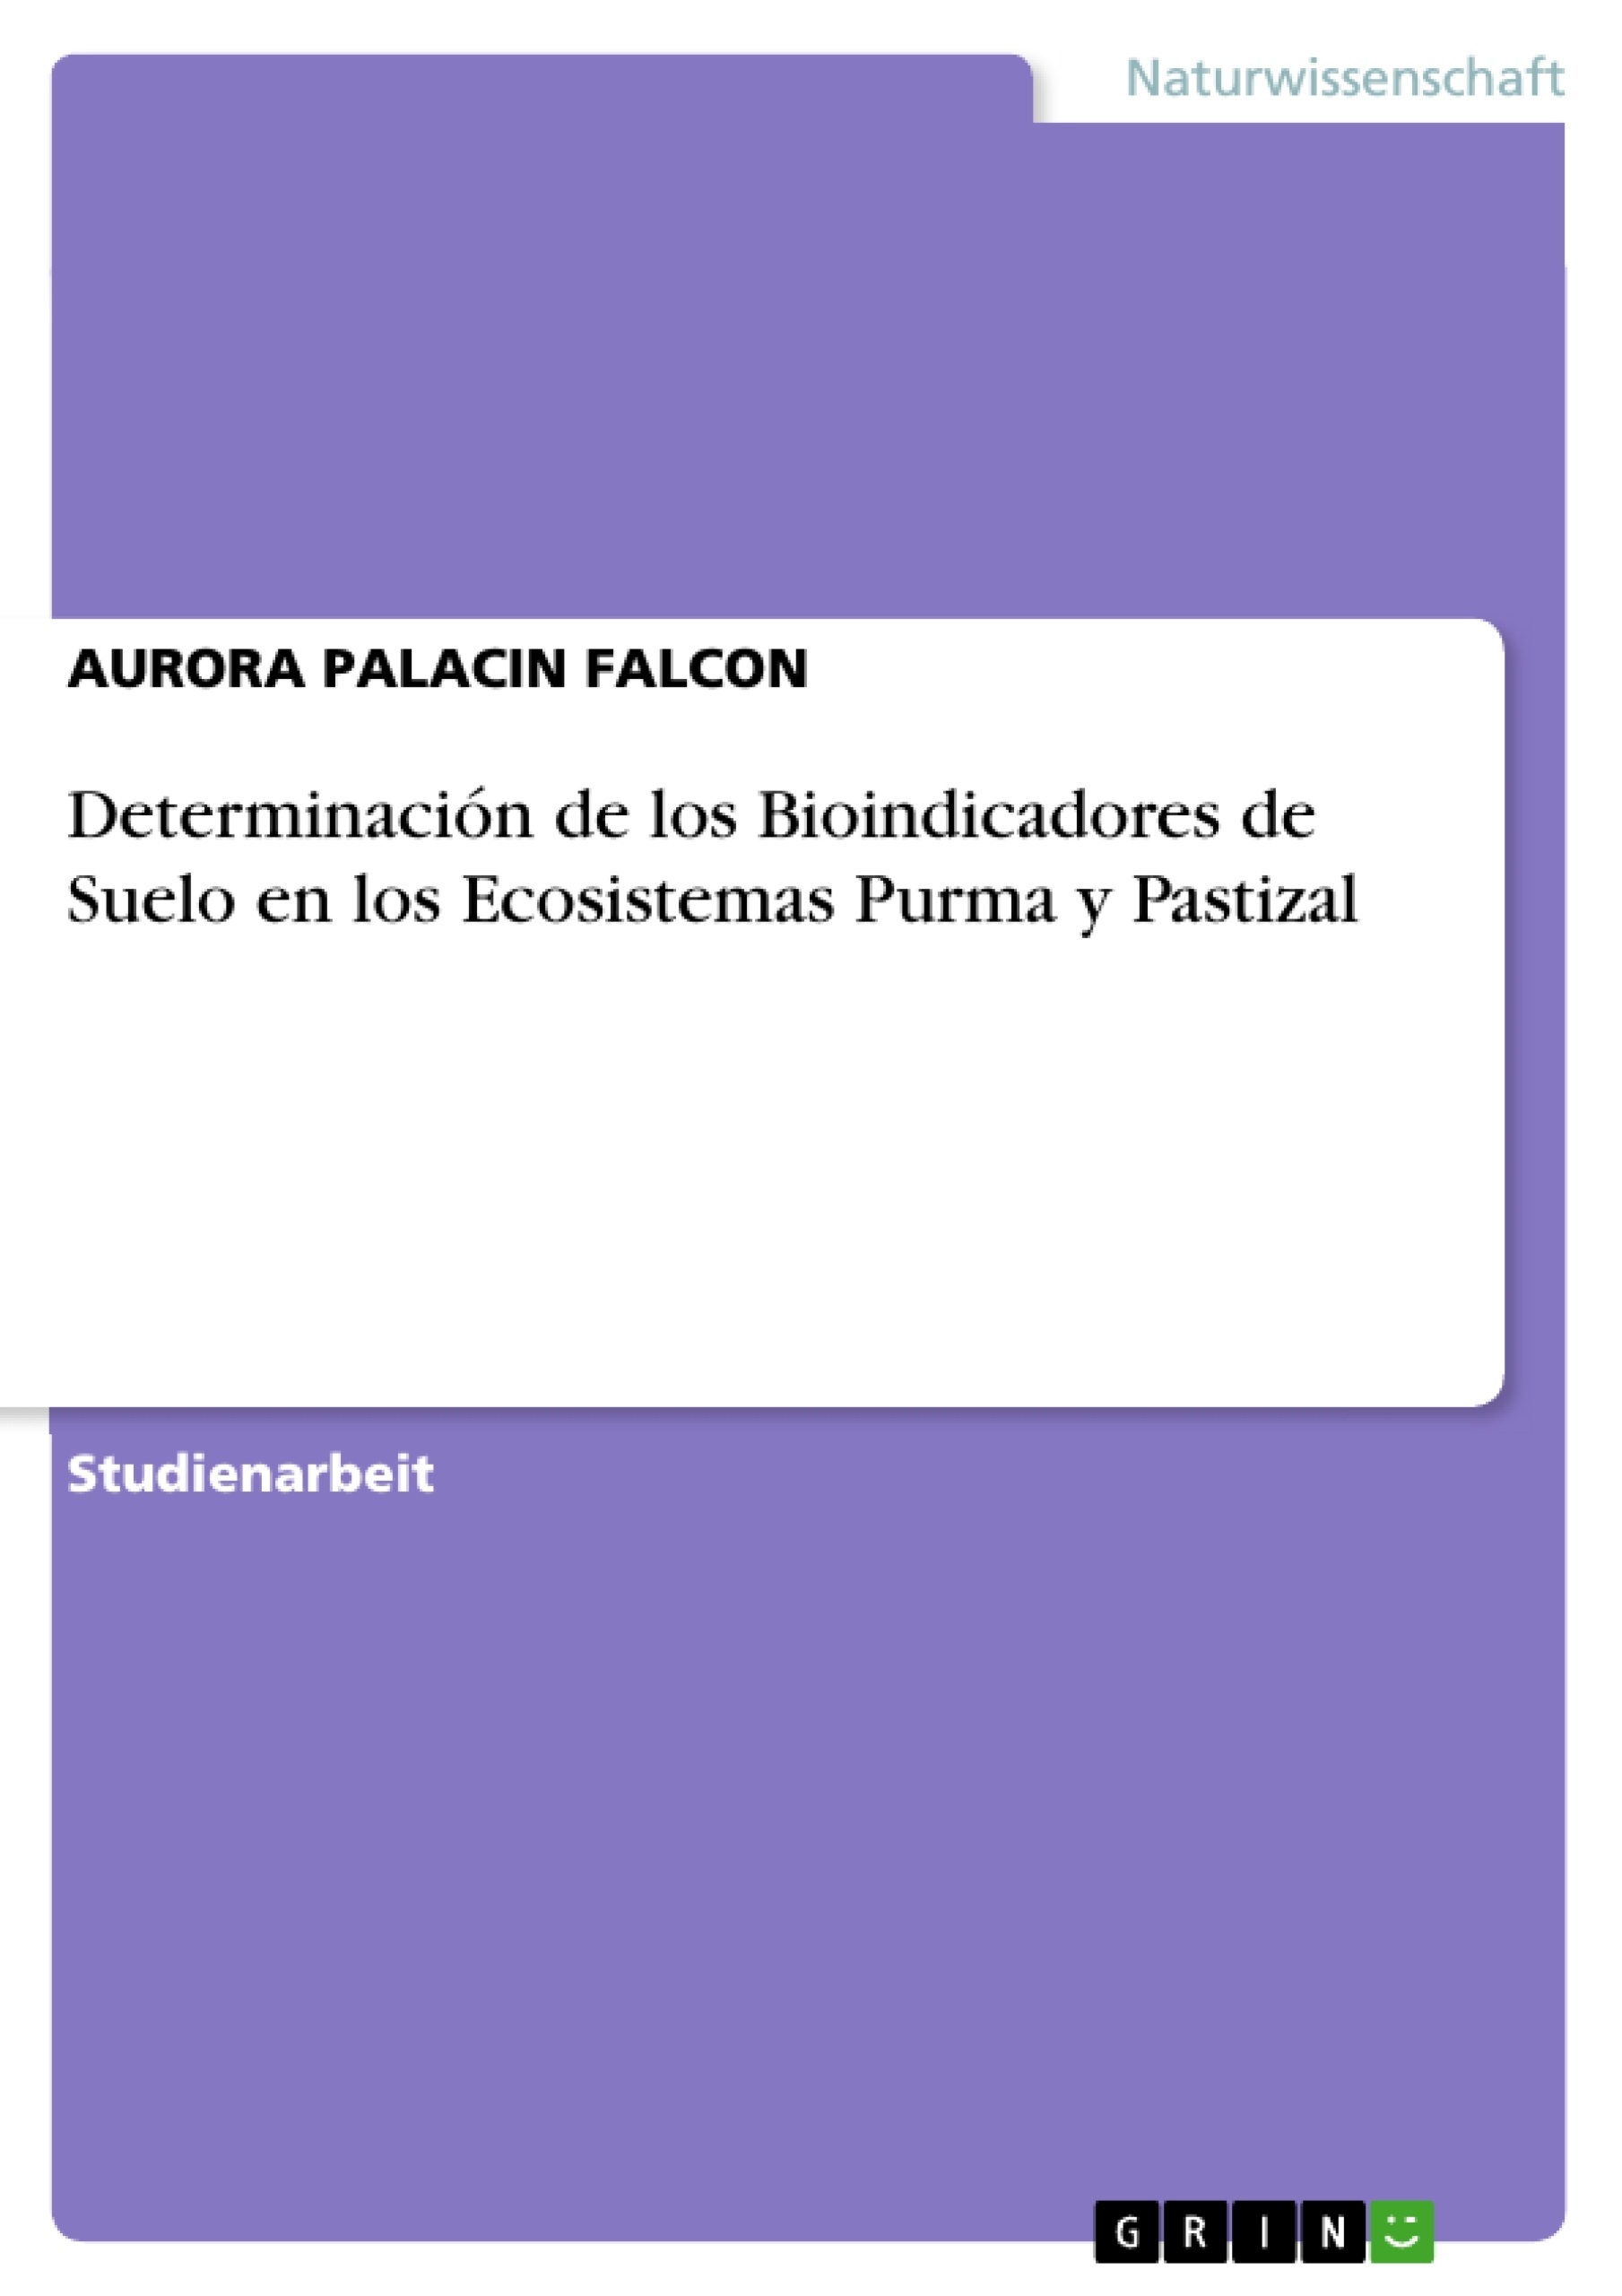 Titel: Determinación de los Bioindicadores de Suelo en los Ecosistemas Purma y Pastizal